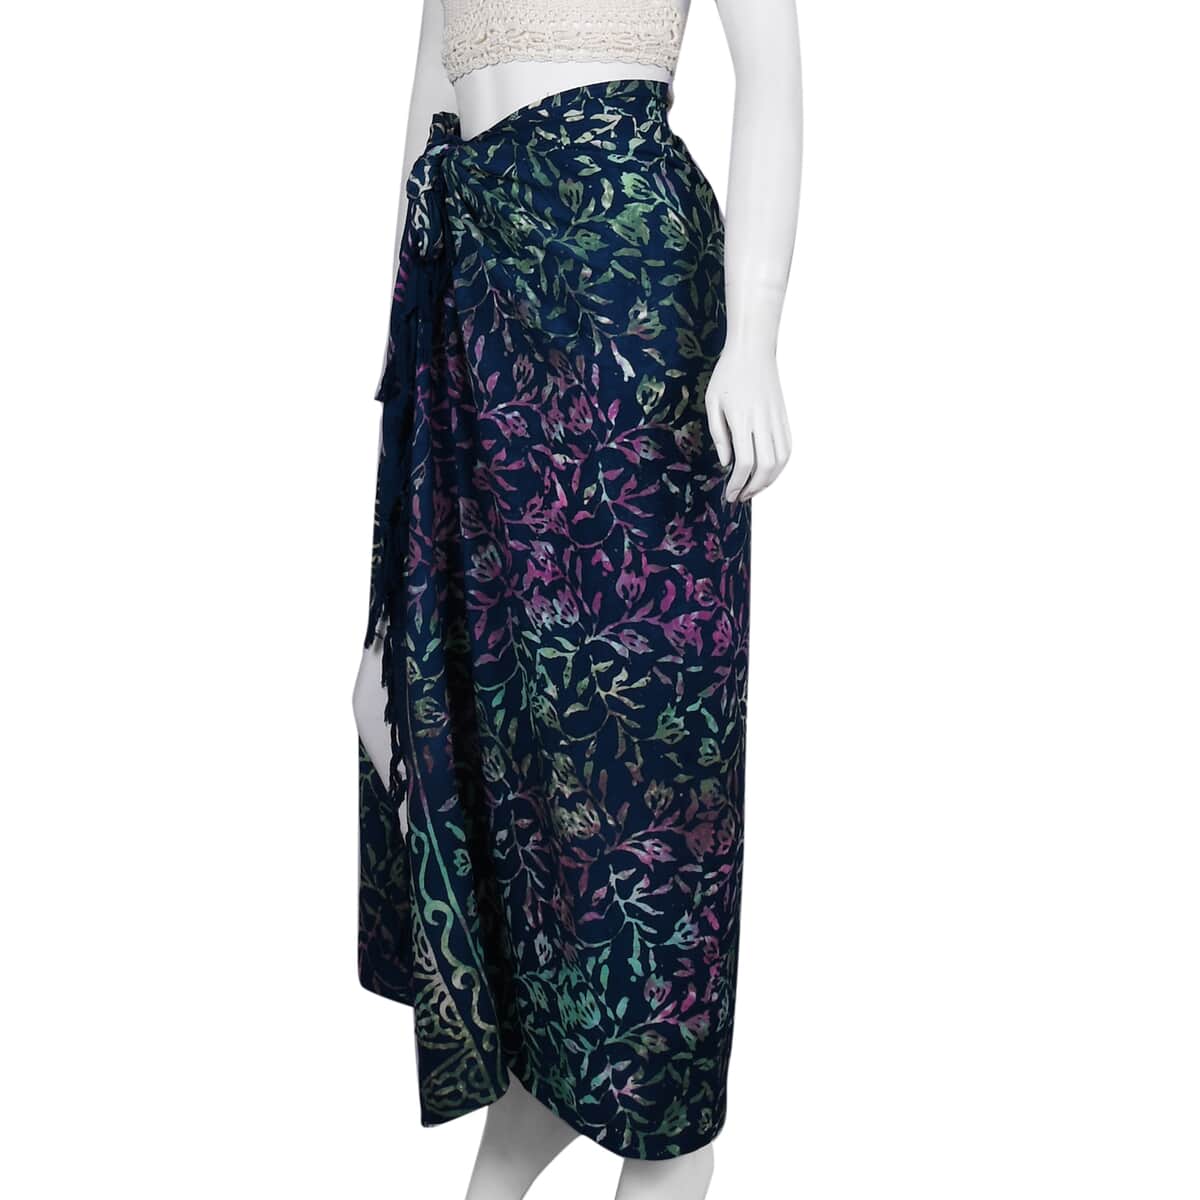 Handmade Dark Grey Floral Motif Pattern 100% Rayon Sarong | Women's Saron Wrap | Sarong Skirt | Beach Sarong Cover Up image number 3